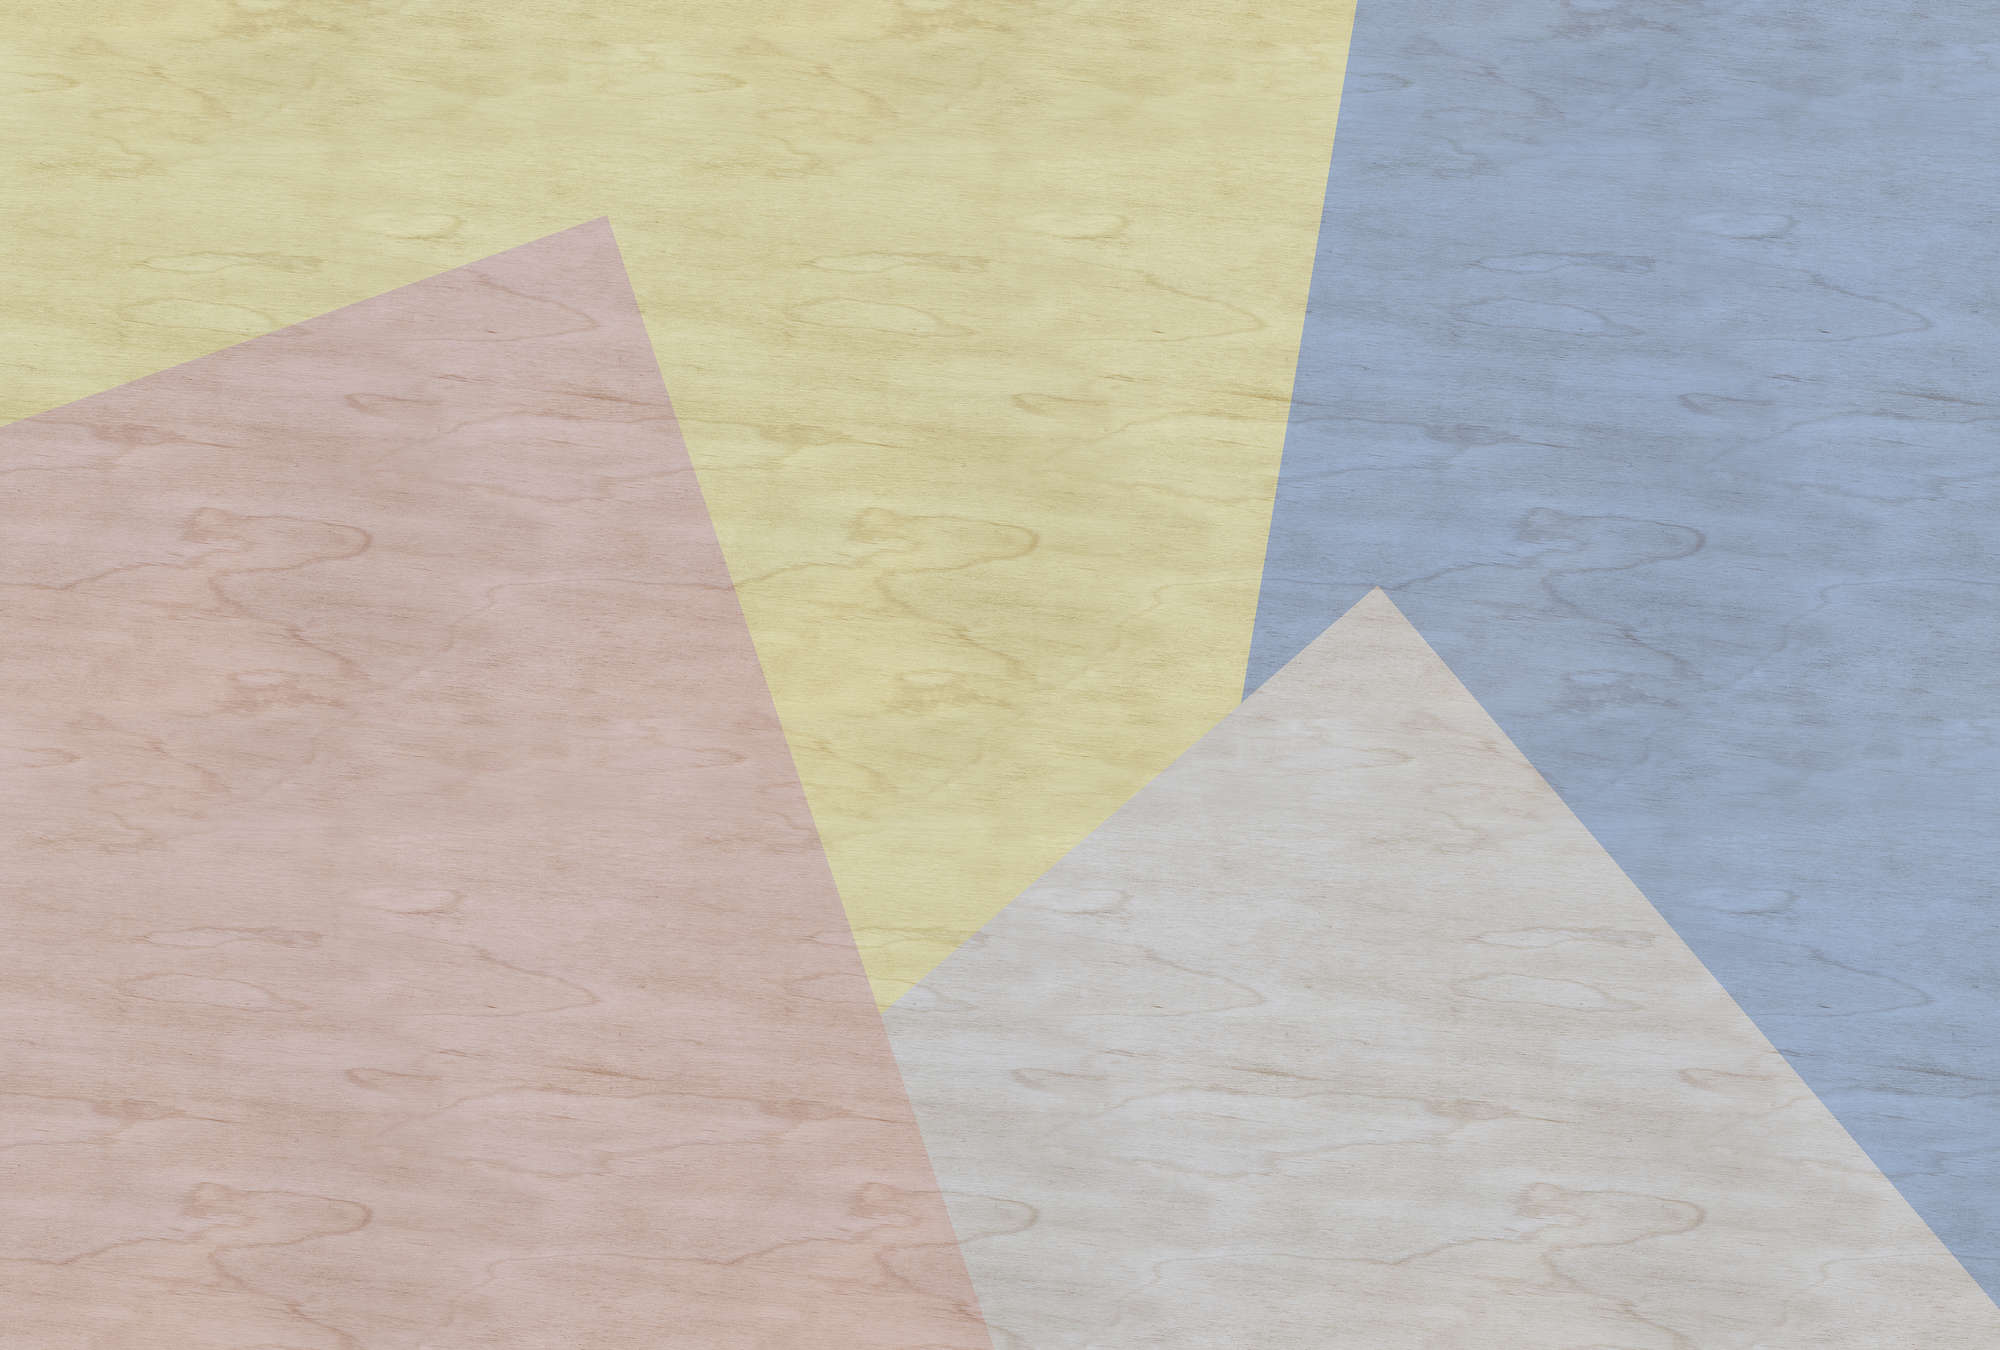             Inaly 3 - Papier peint abstrait coloré - texture contreplaquée - beige, bleu | nacré intissé lisse
        